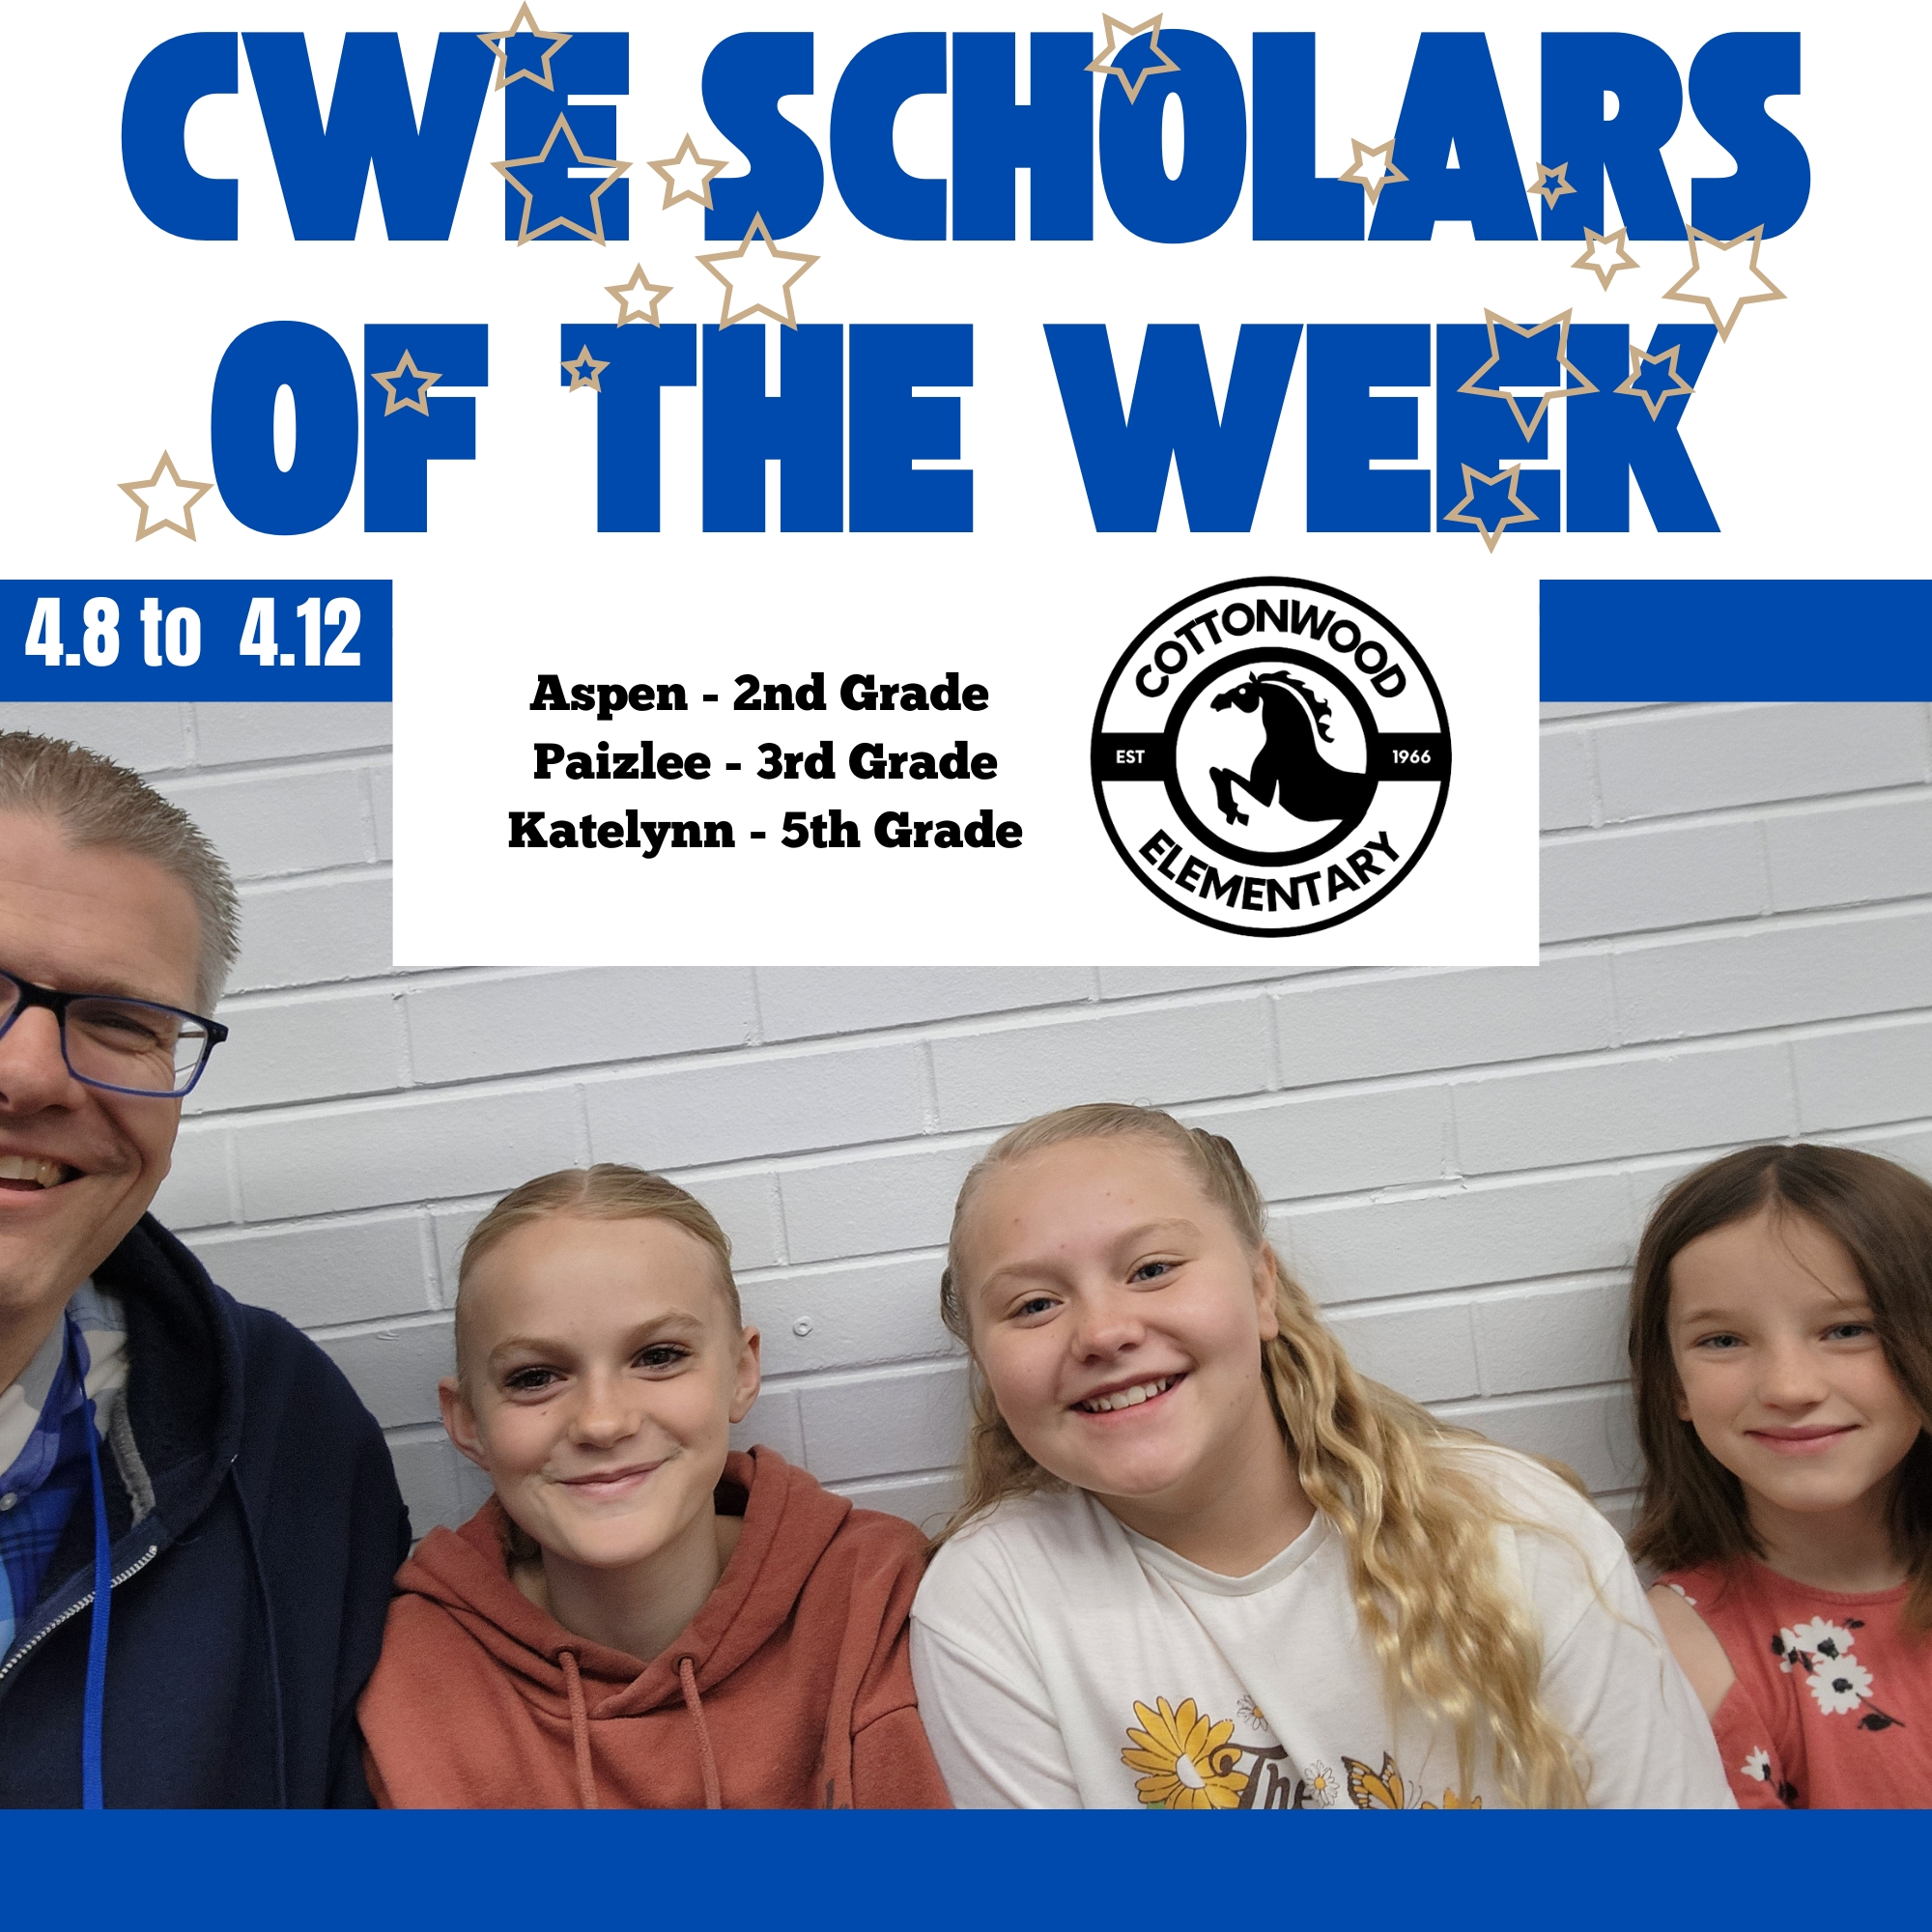 CWE-Scholars-of-the-Week-4.8-to-4.12.jpg